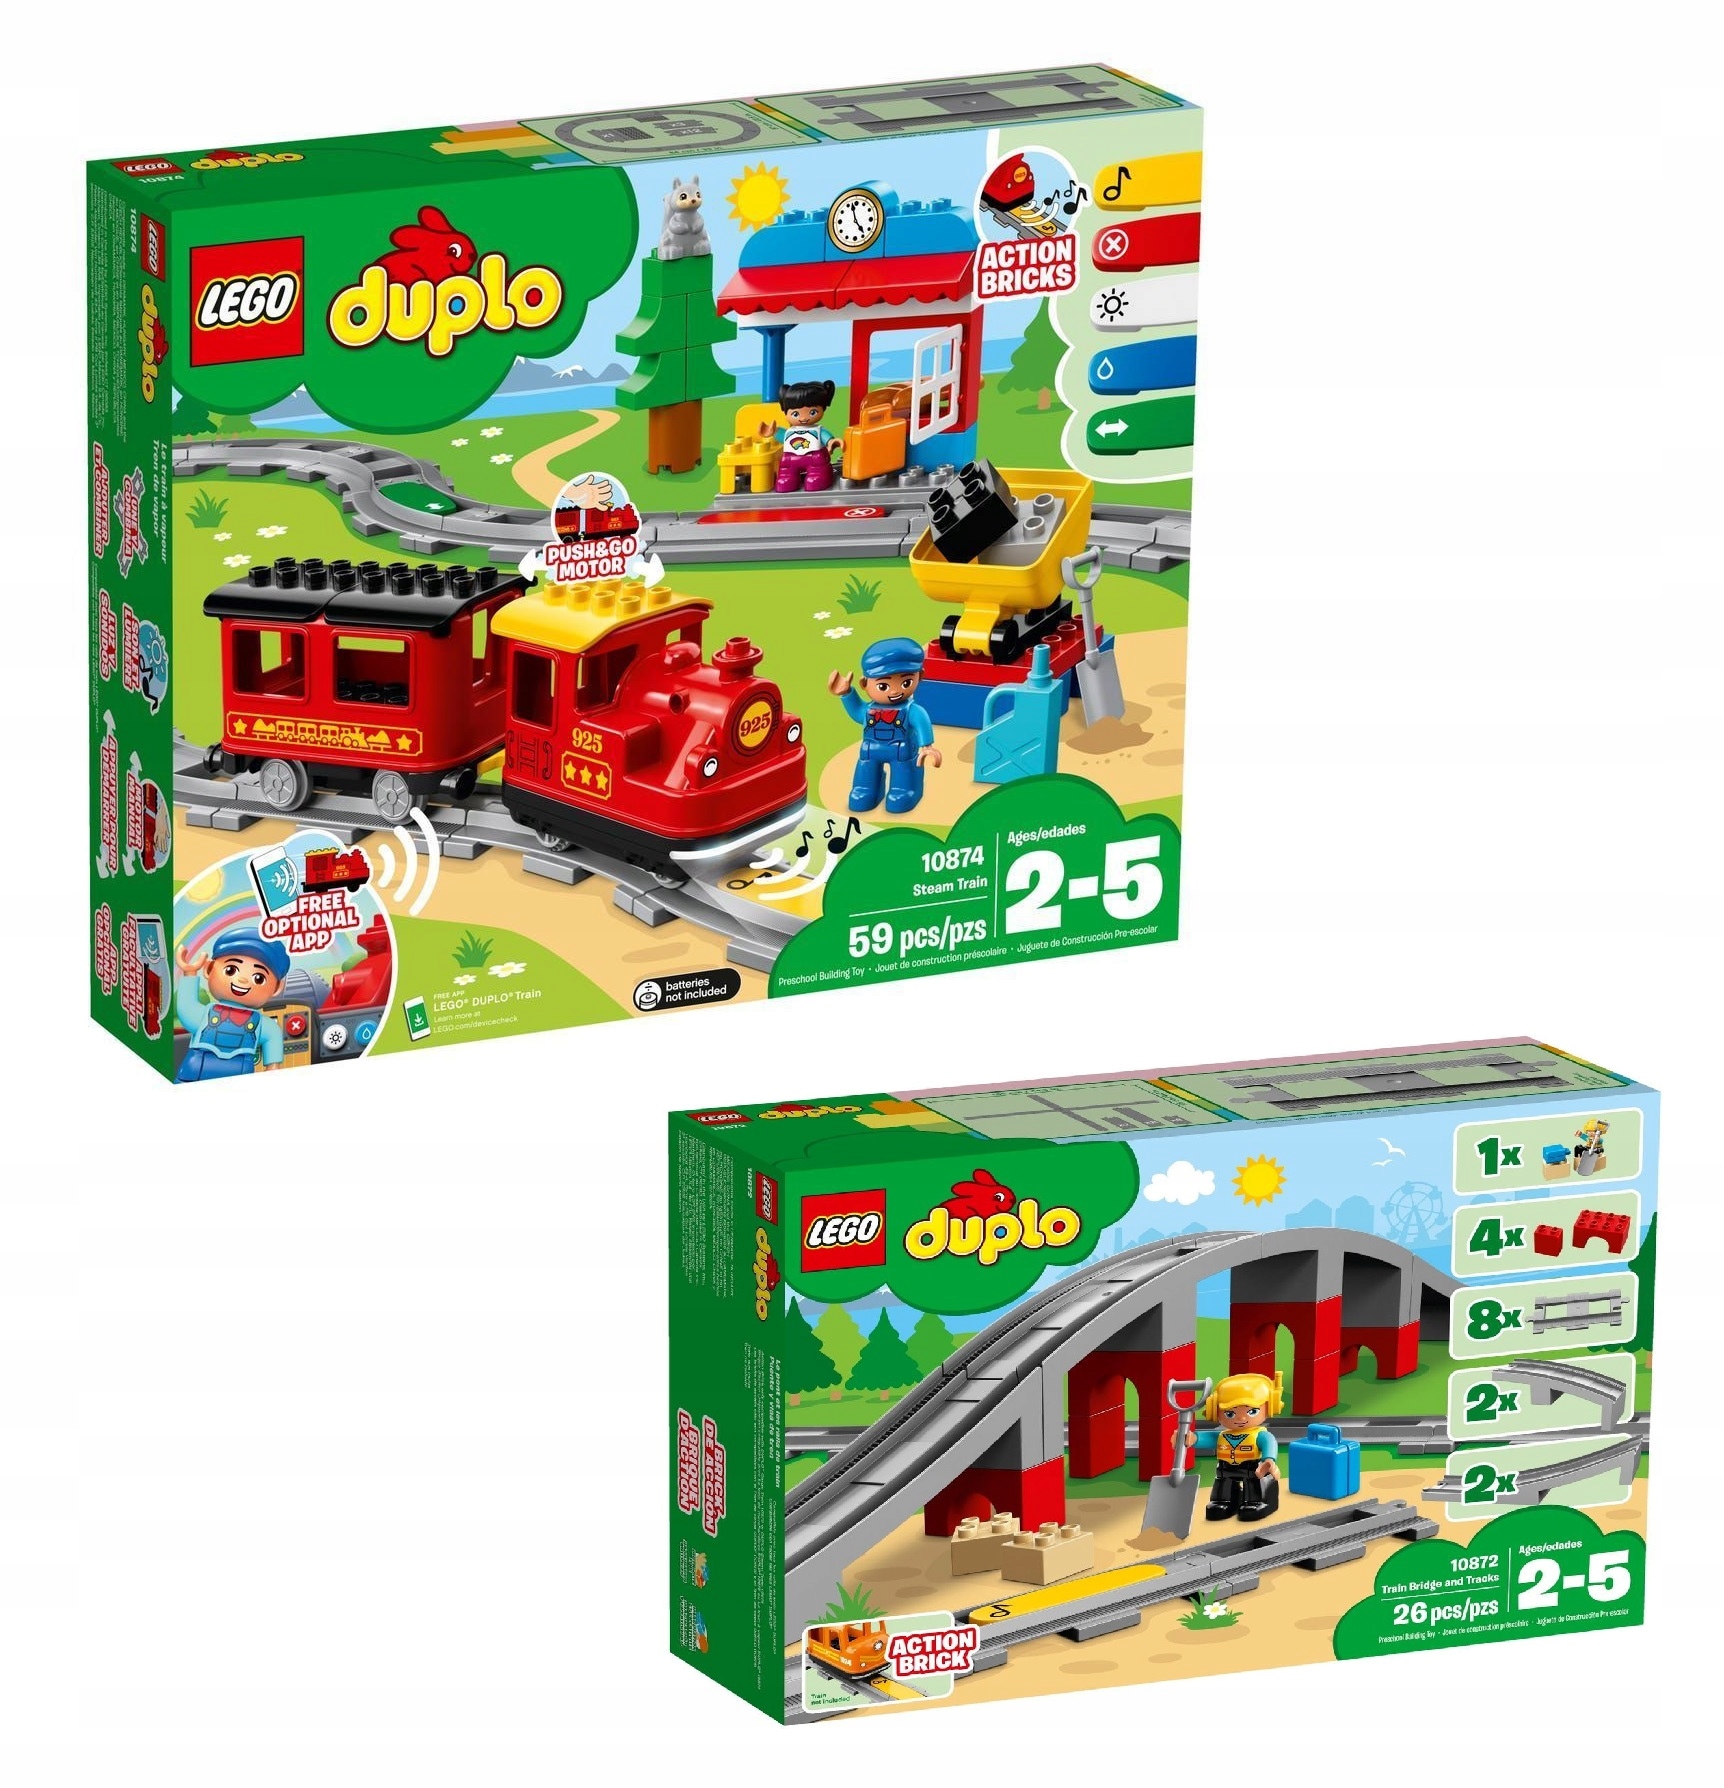 Lego DUPLO - Le train à vapeur, Jouets de construction 10874